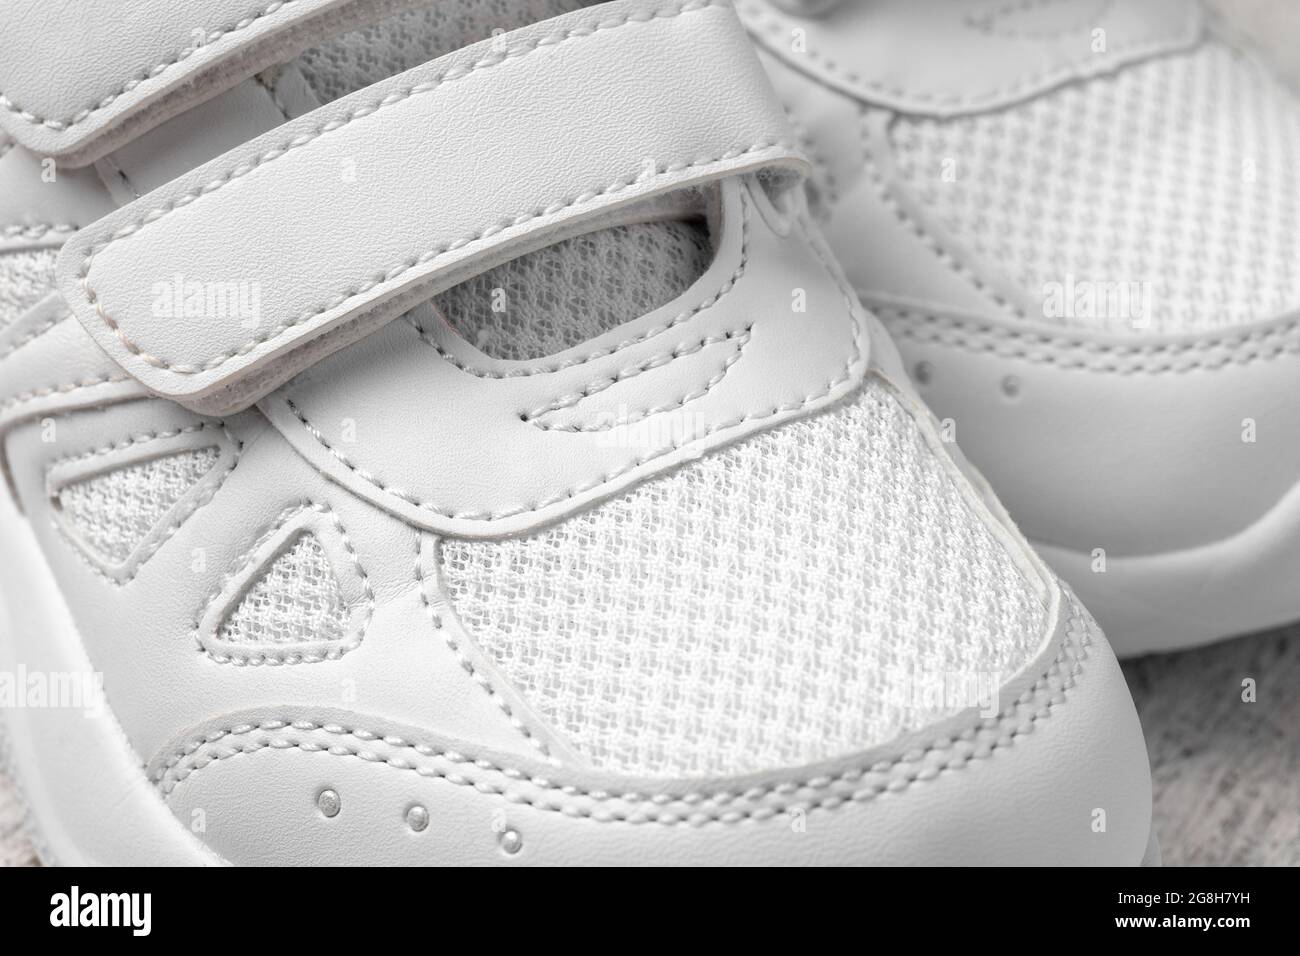 Dos zapatos de niño blancos para niños con cierres de velcro para la  comodidad de los zapatos para niños aislados en